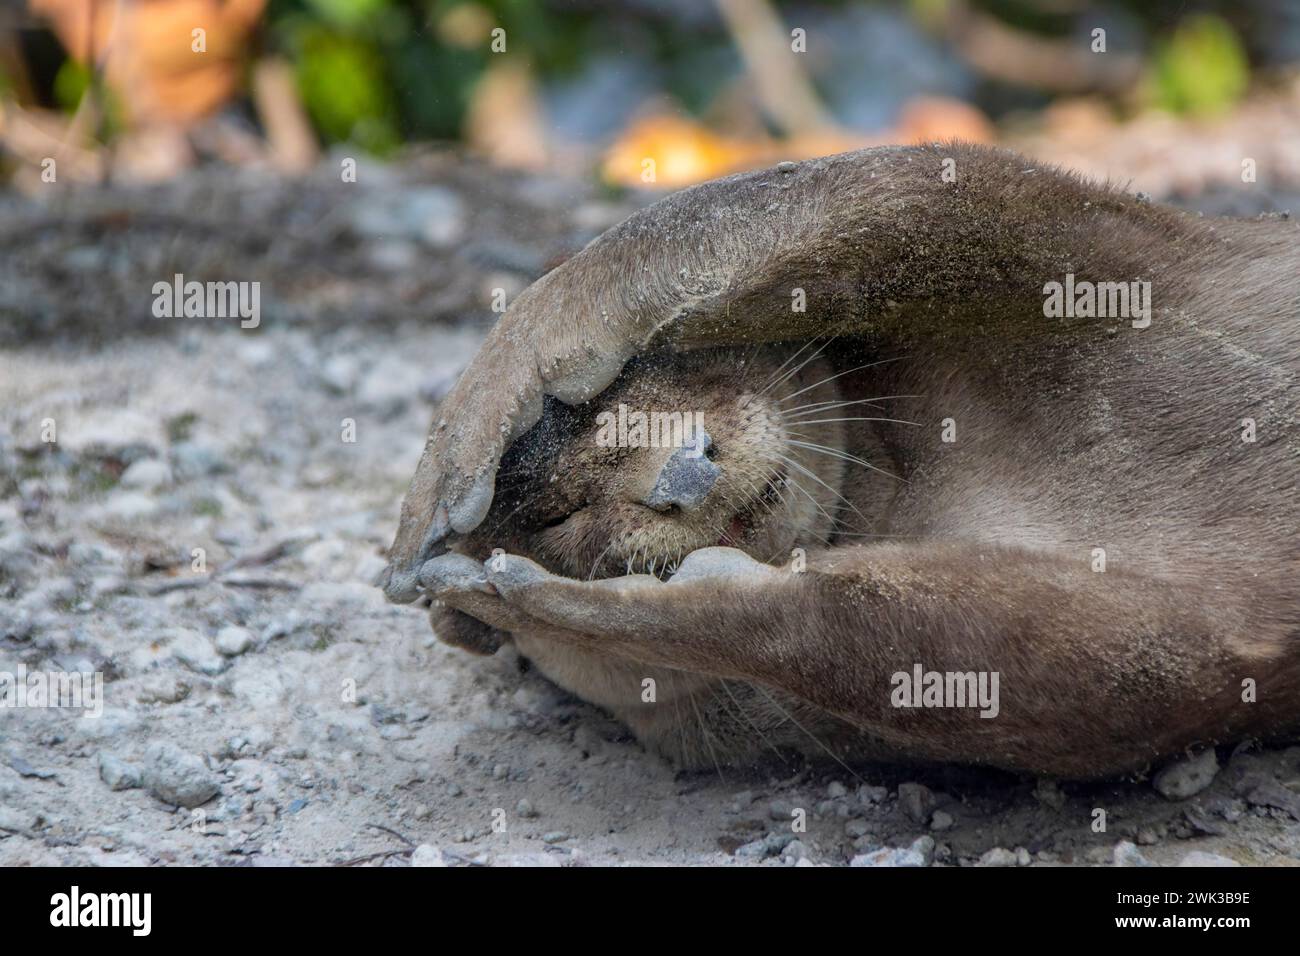 Der glatte Otter (Lutrogale perspicillata) liegt am Boden im Singapore Sungei Buloh Wetland. Legen Sie die Pfoten ins Gesicht, als würden Sie sich verstecken. Stockfoto